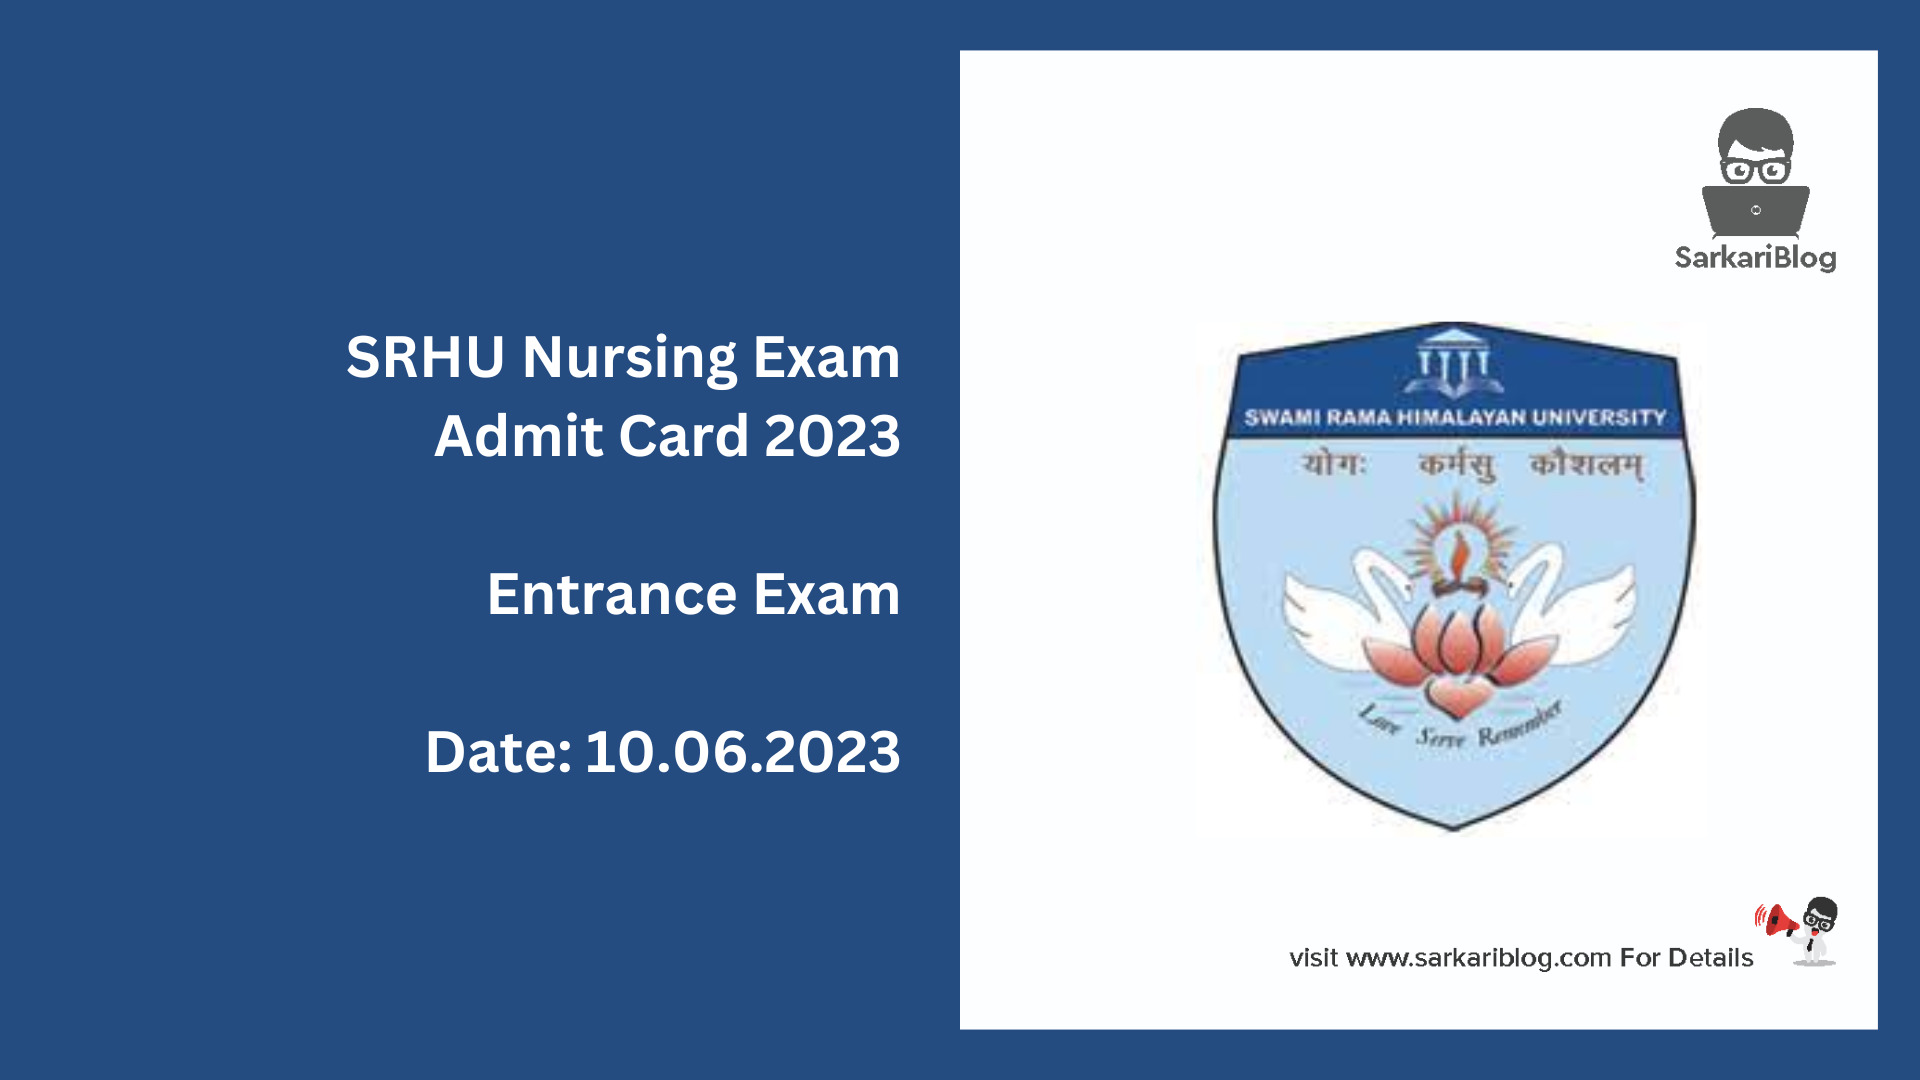 SRHU Nursing Exam Admit Card 2023